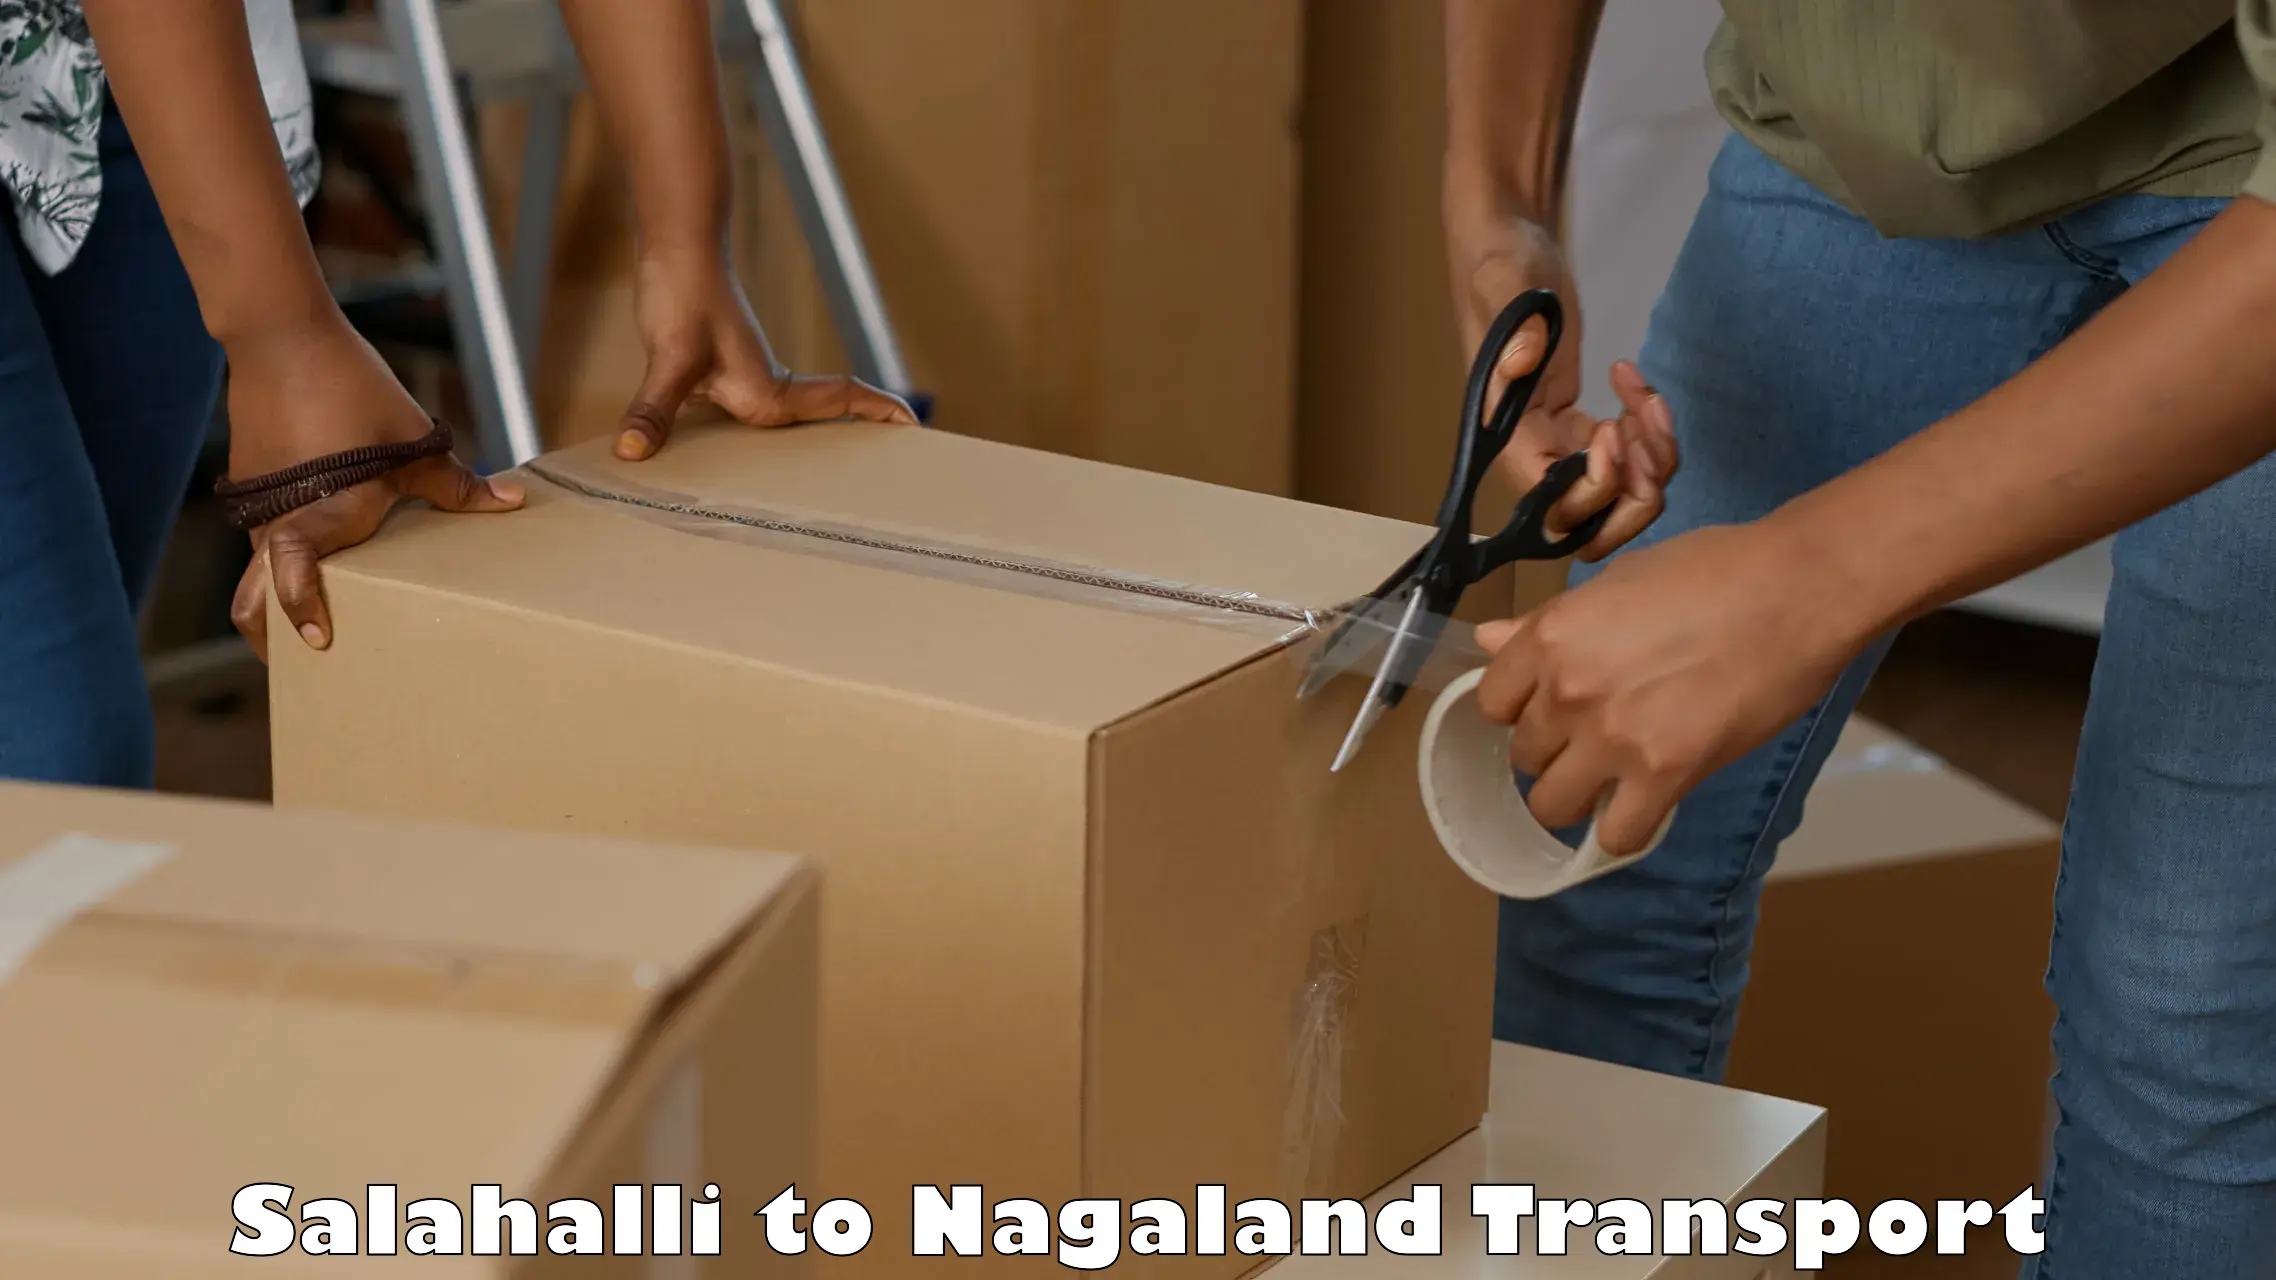 Daily transport service Salahalli to Nagaland